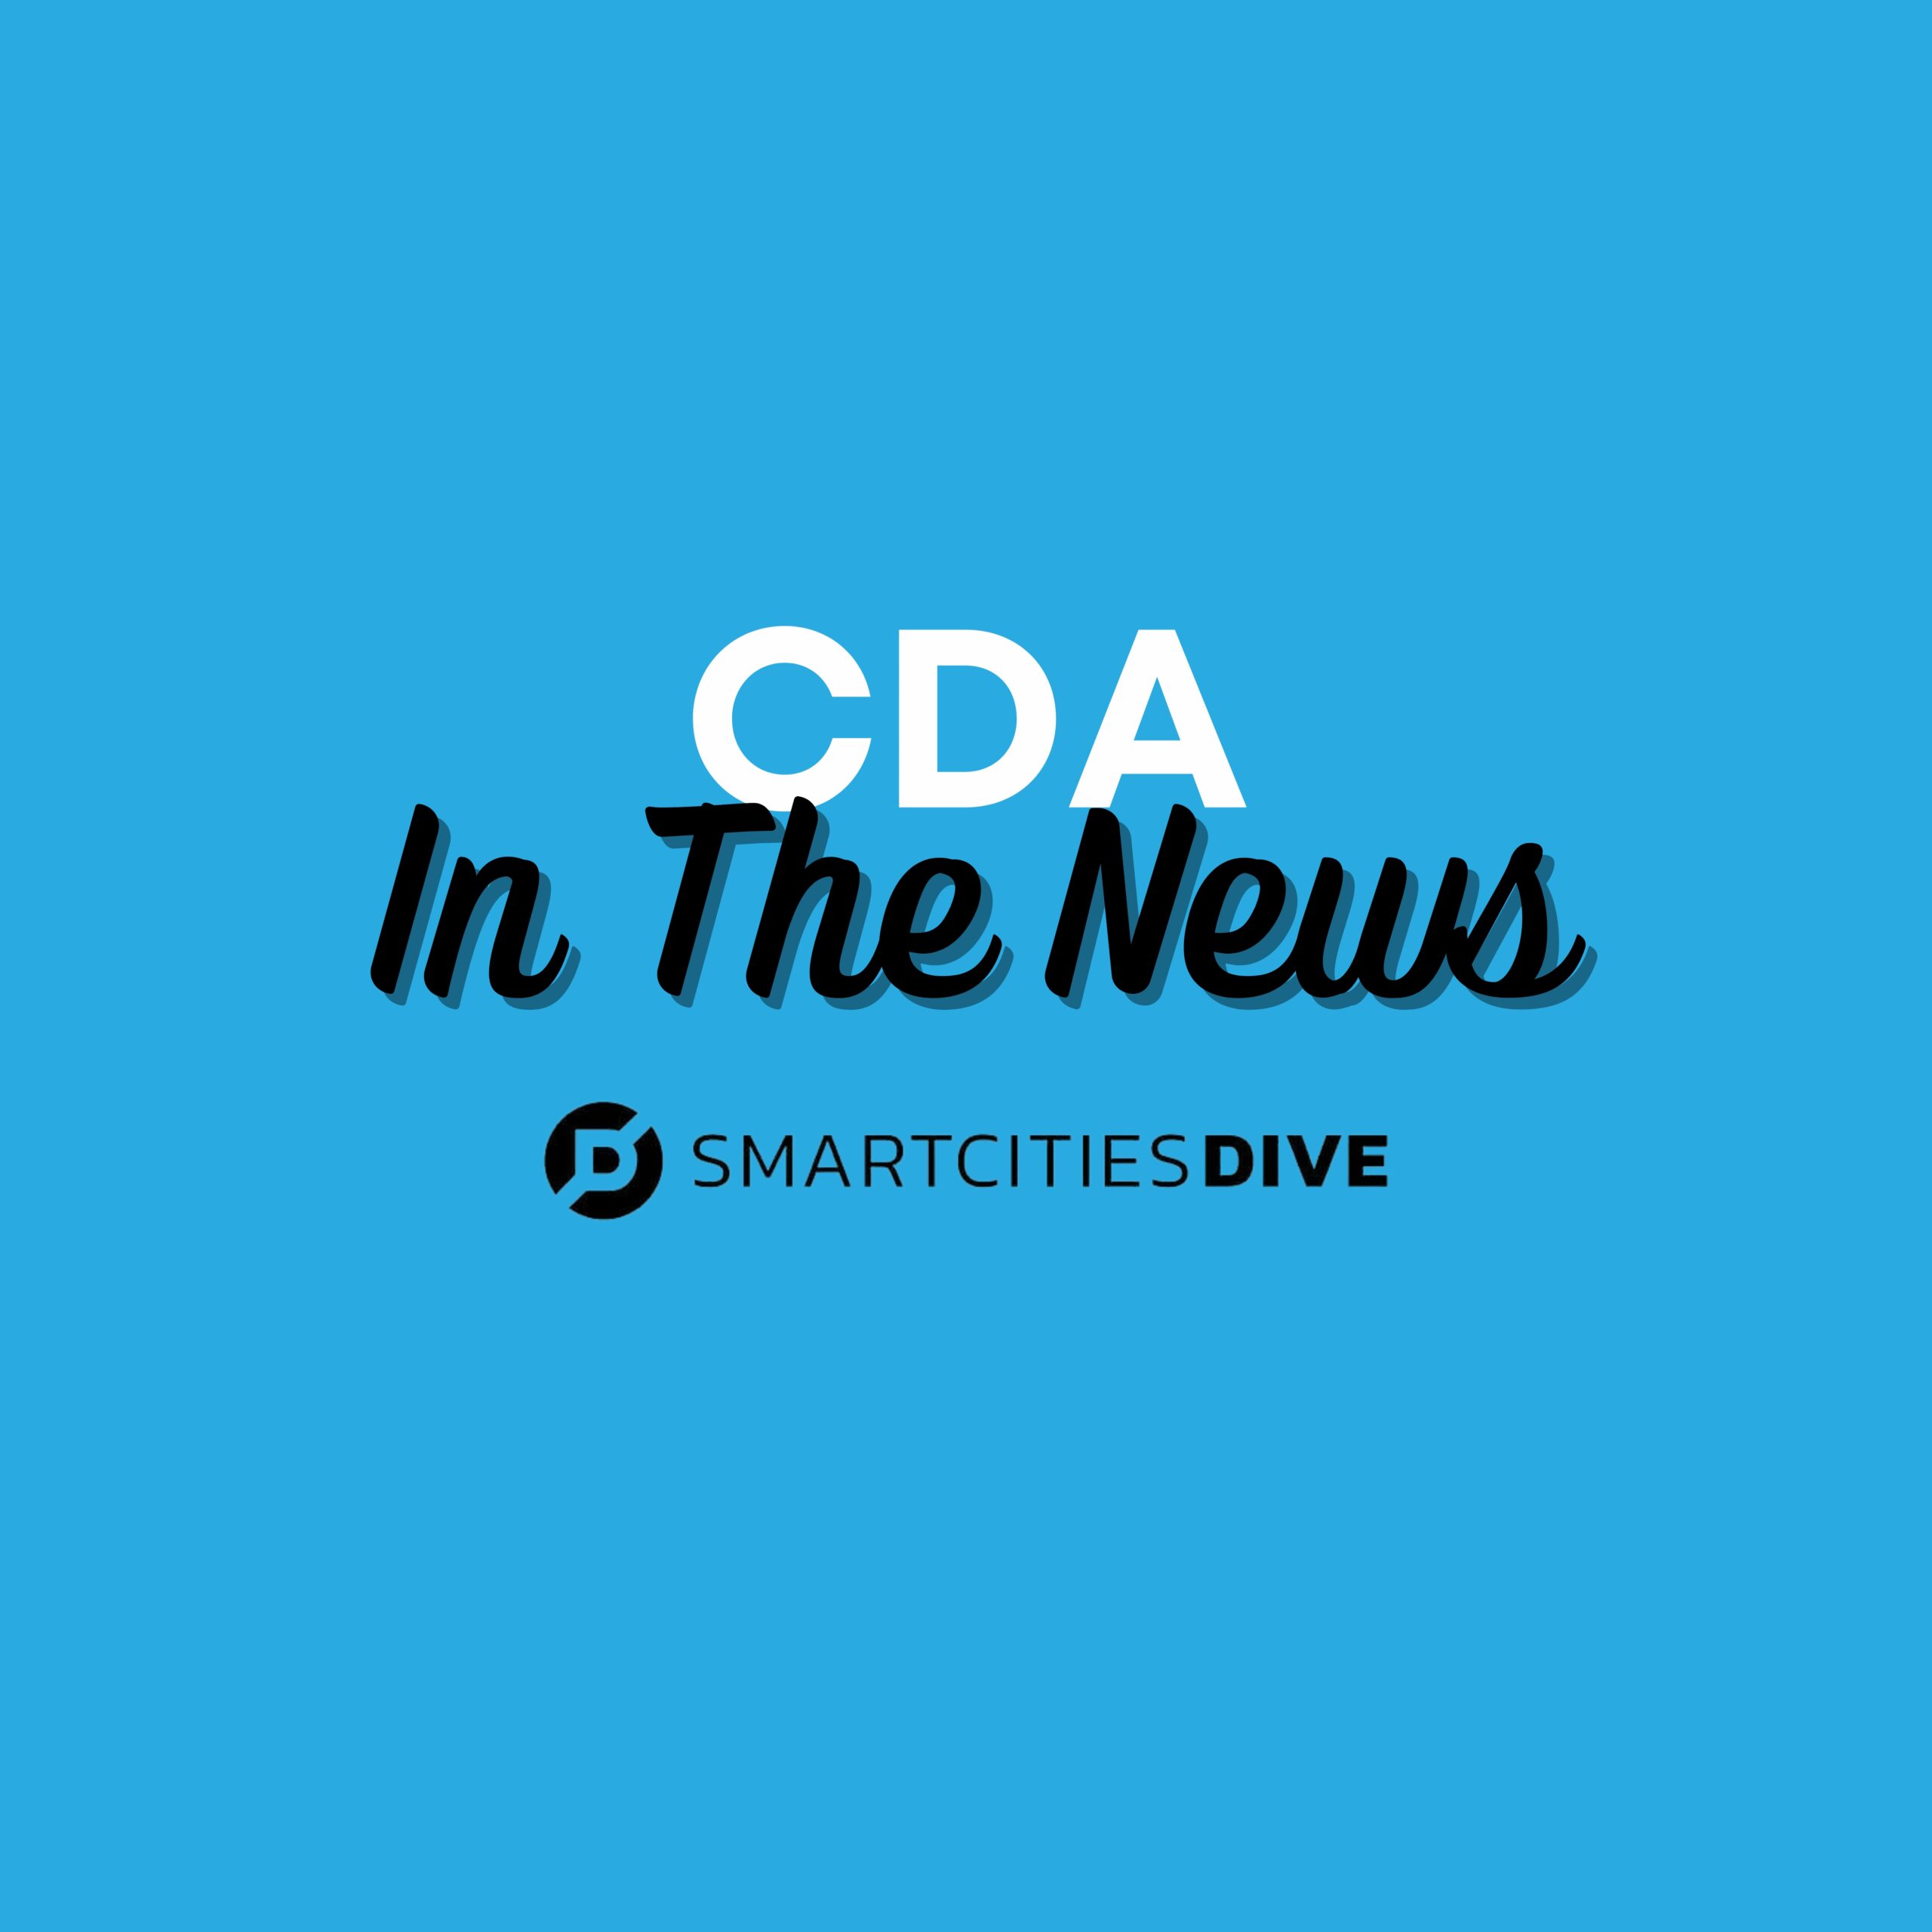 CDA Lisa Ellman Featured in Smart Cities Dive